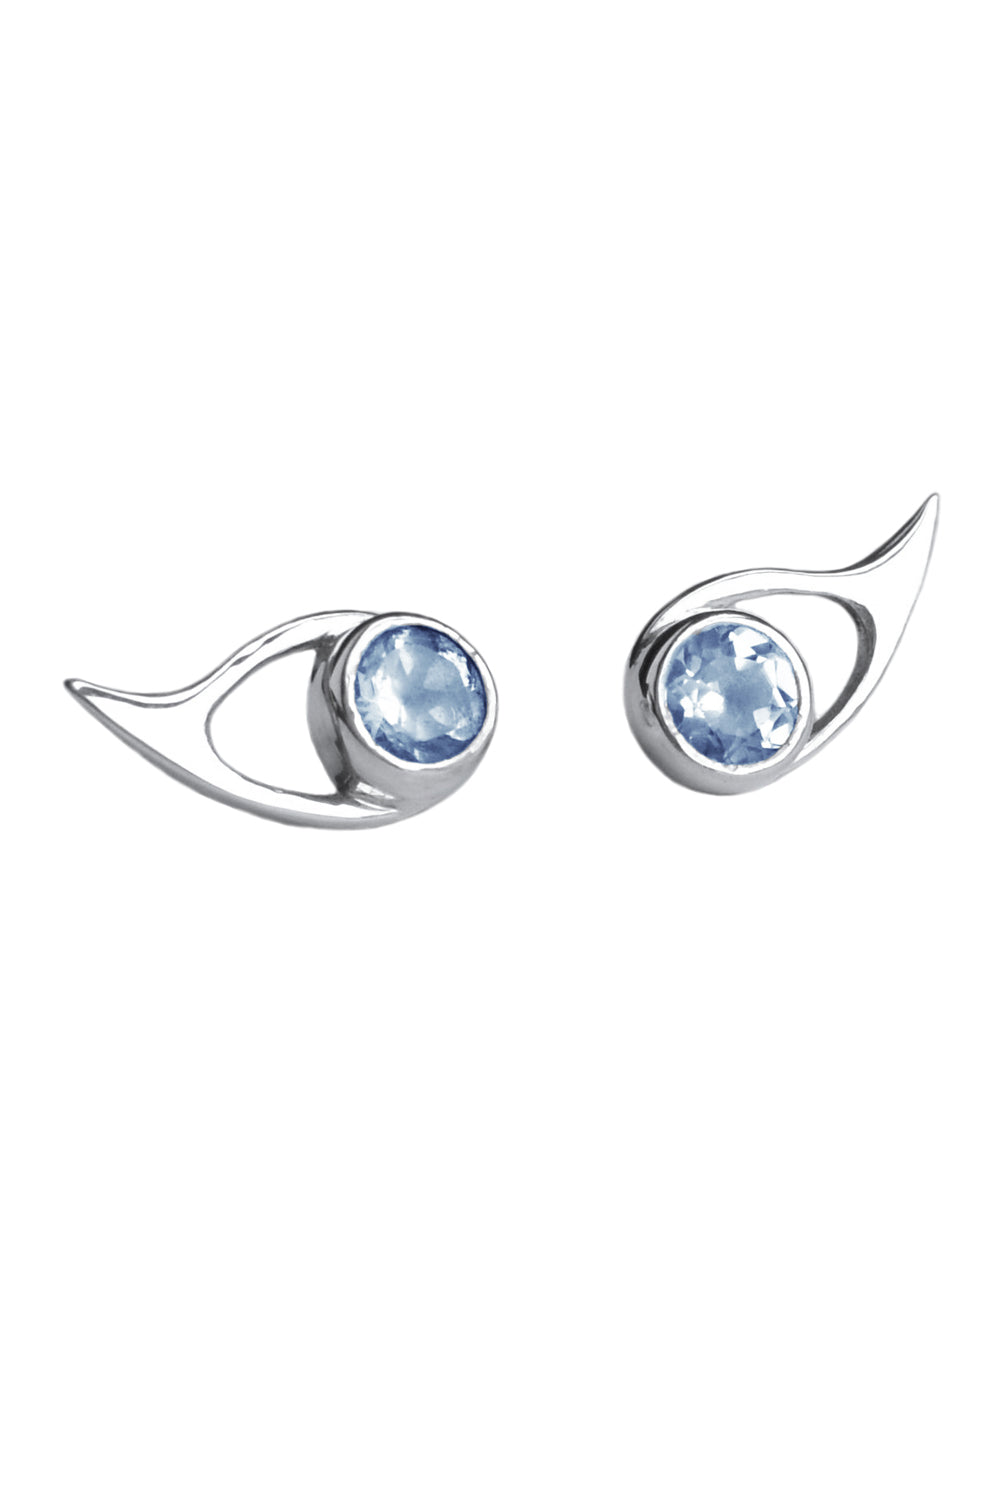 Fox Eye silver earrings by Annika Burman